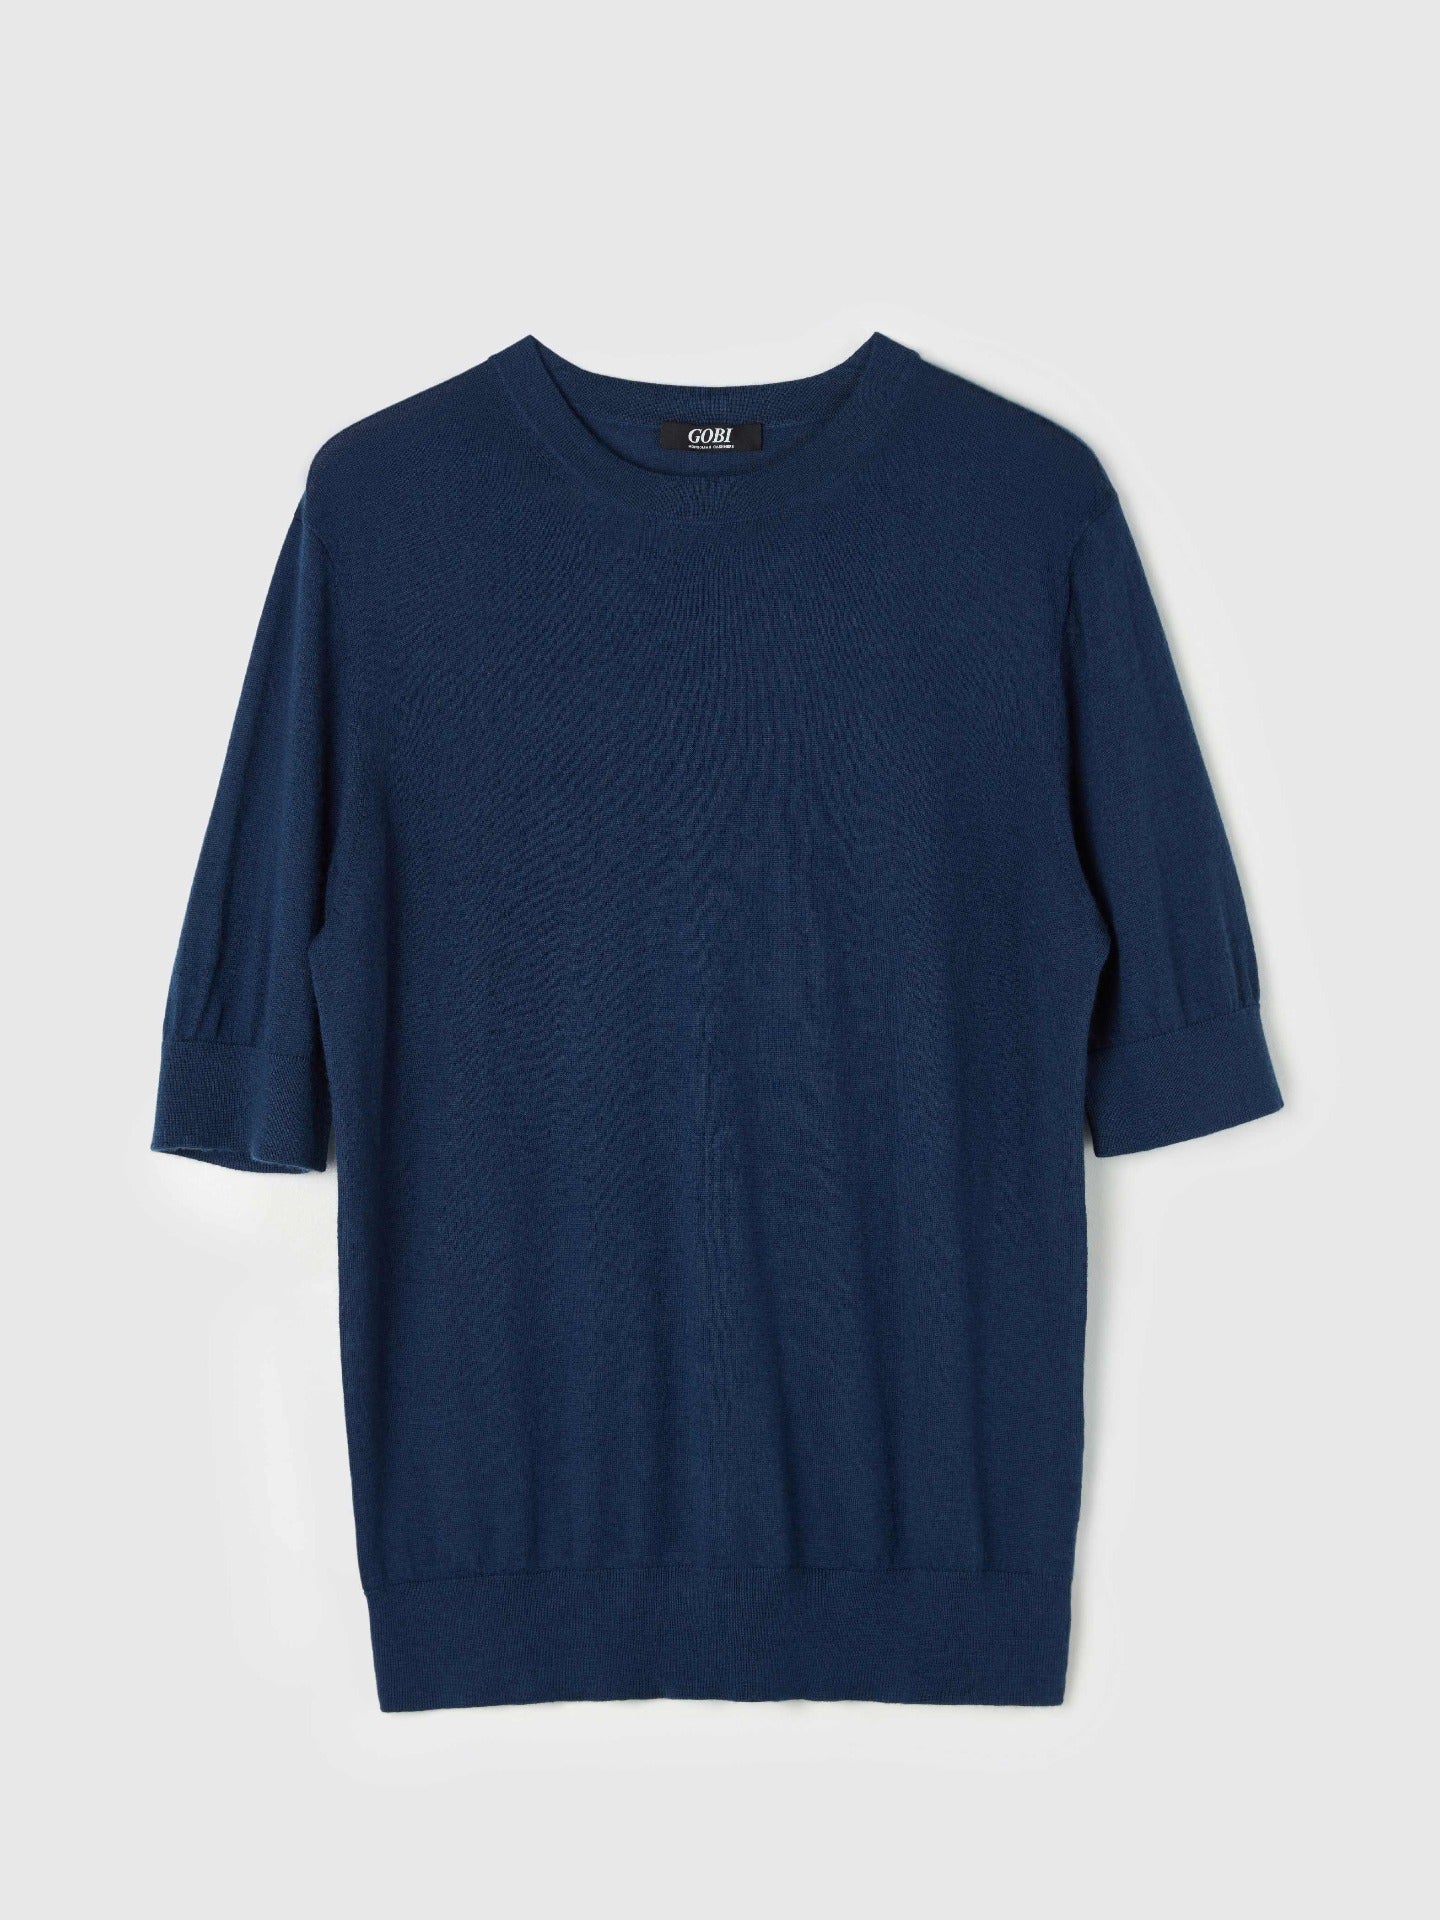 Herren T-Shirt Aus Seide Und Kaschmir Marineblau - Gobi Cashmere